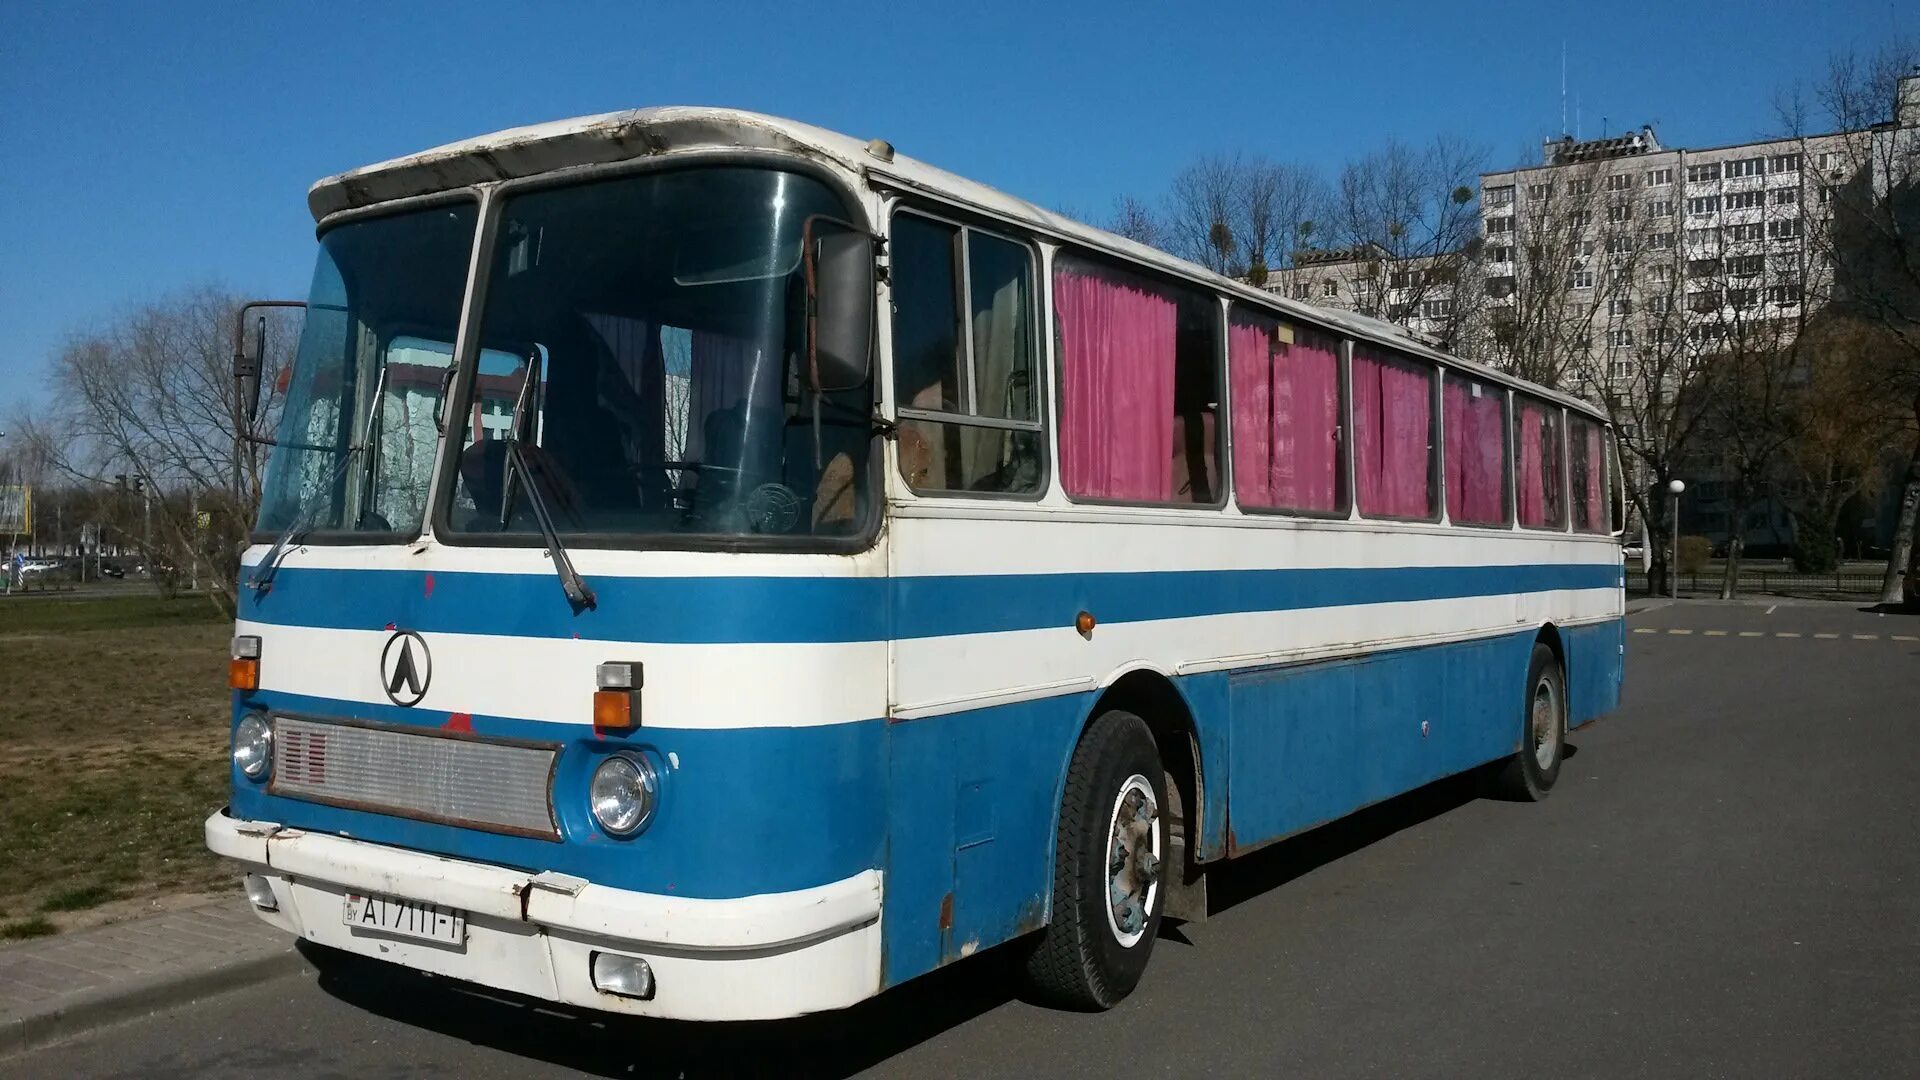 ЛАЗ 699 турист. Автобус ЛАЗ 699. Автобус ЛАЗ 699р турист. ЛАЗ-699 Карпаты.